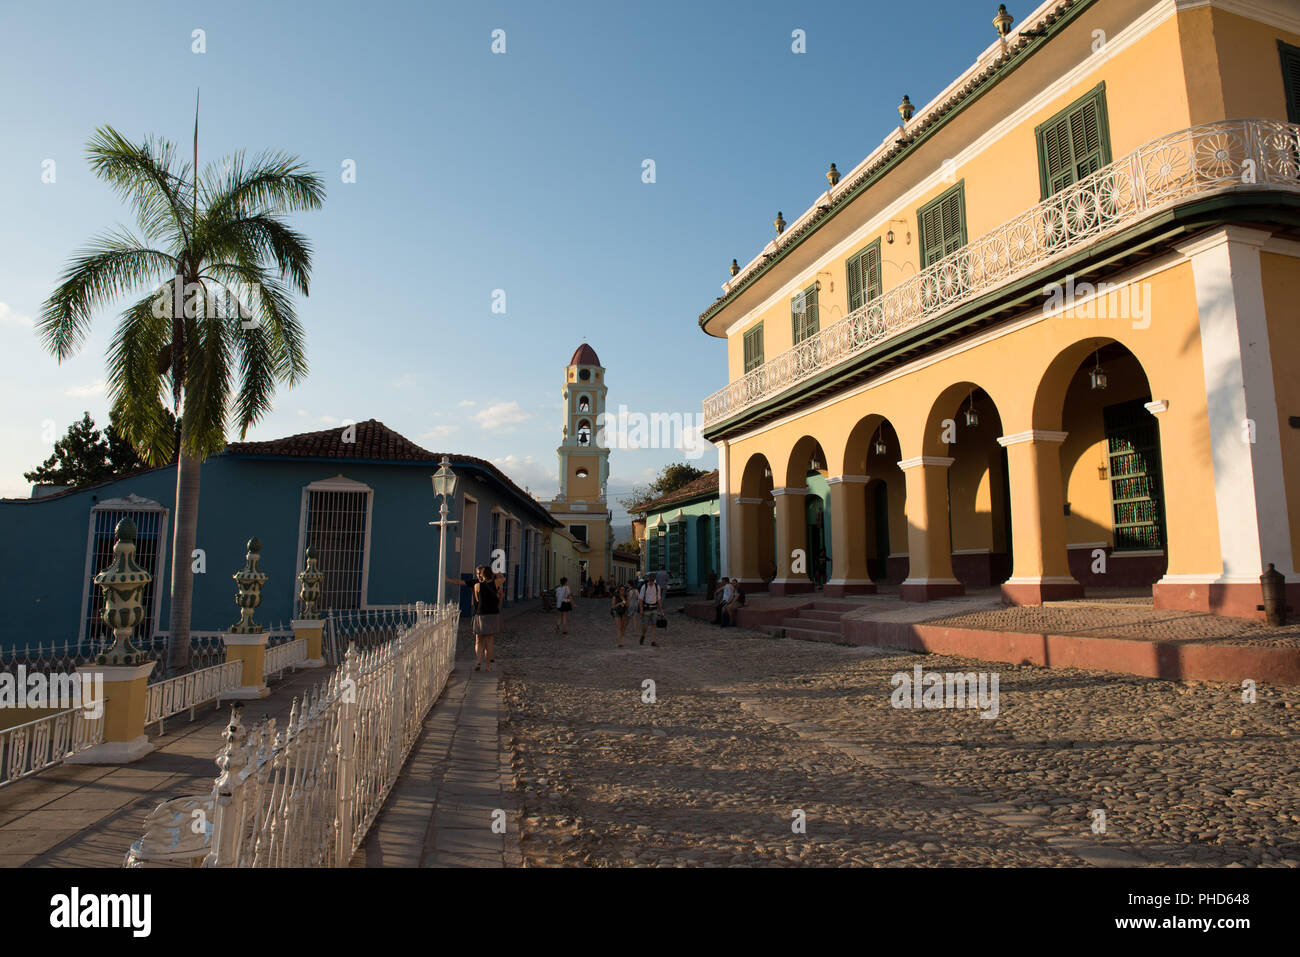 Trinidad, Cuba / Marzo 15, 2016: la casa histórica de la rica familia Borrell, el edificio colonial alberga hoy el Museo Romántico (Museo Romántico). Foto de stock